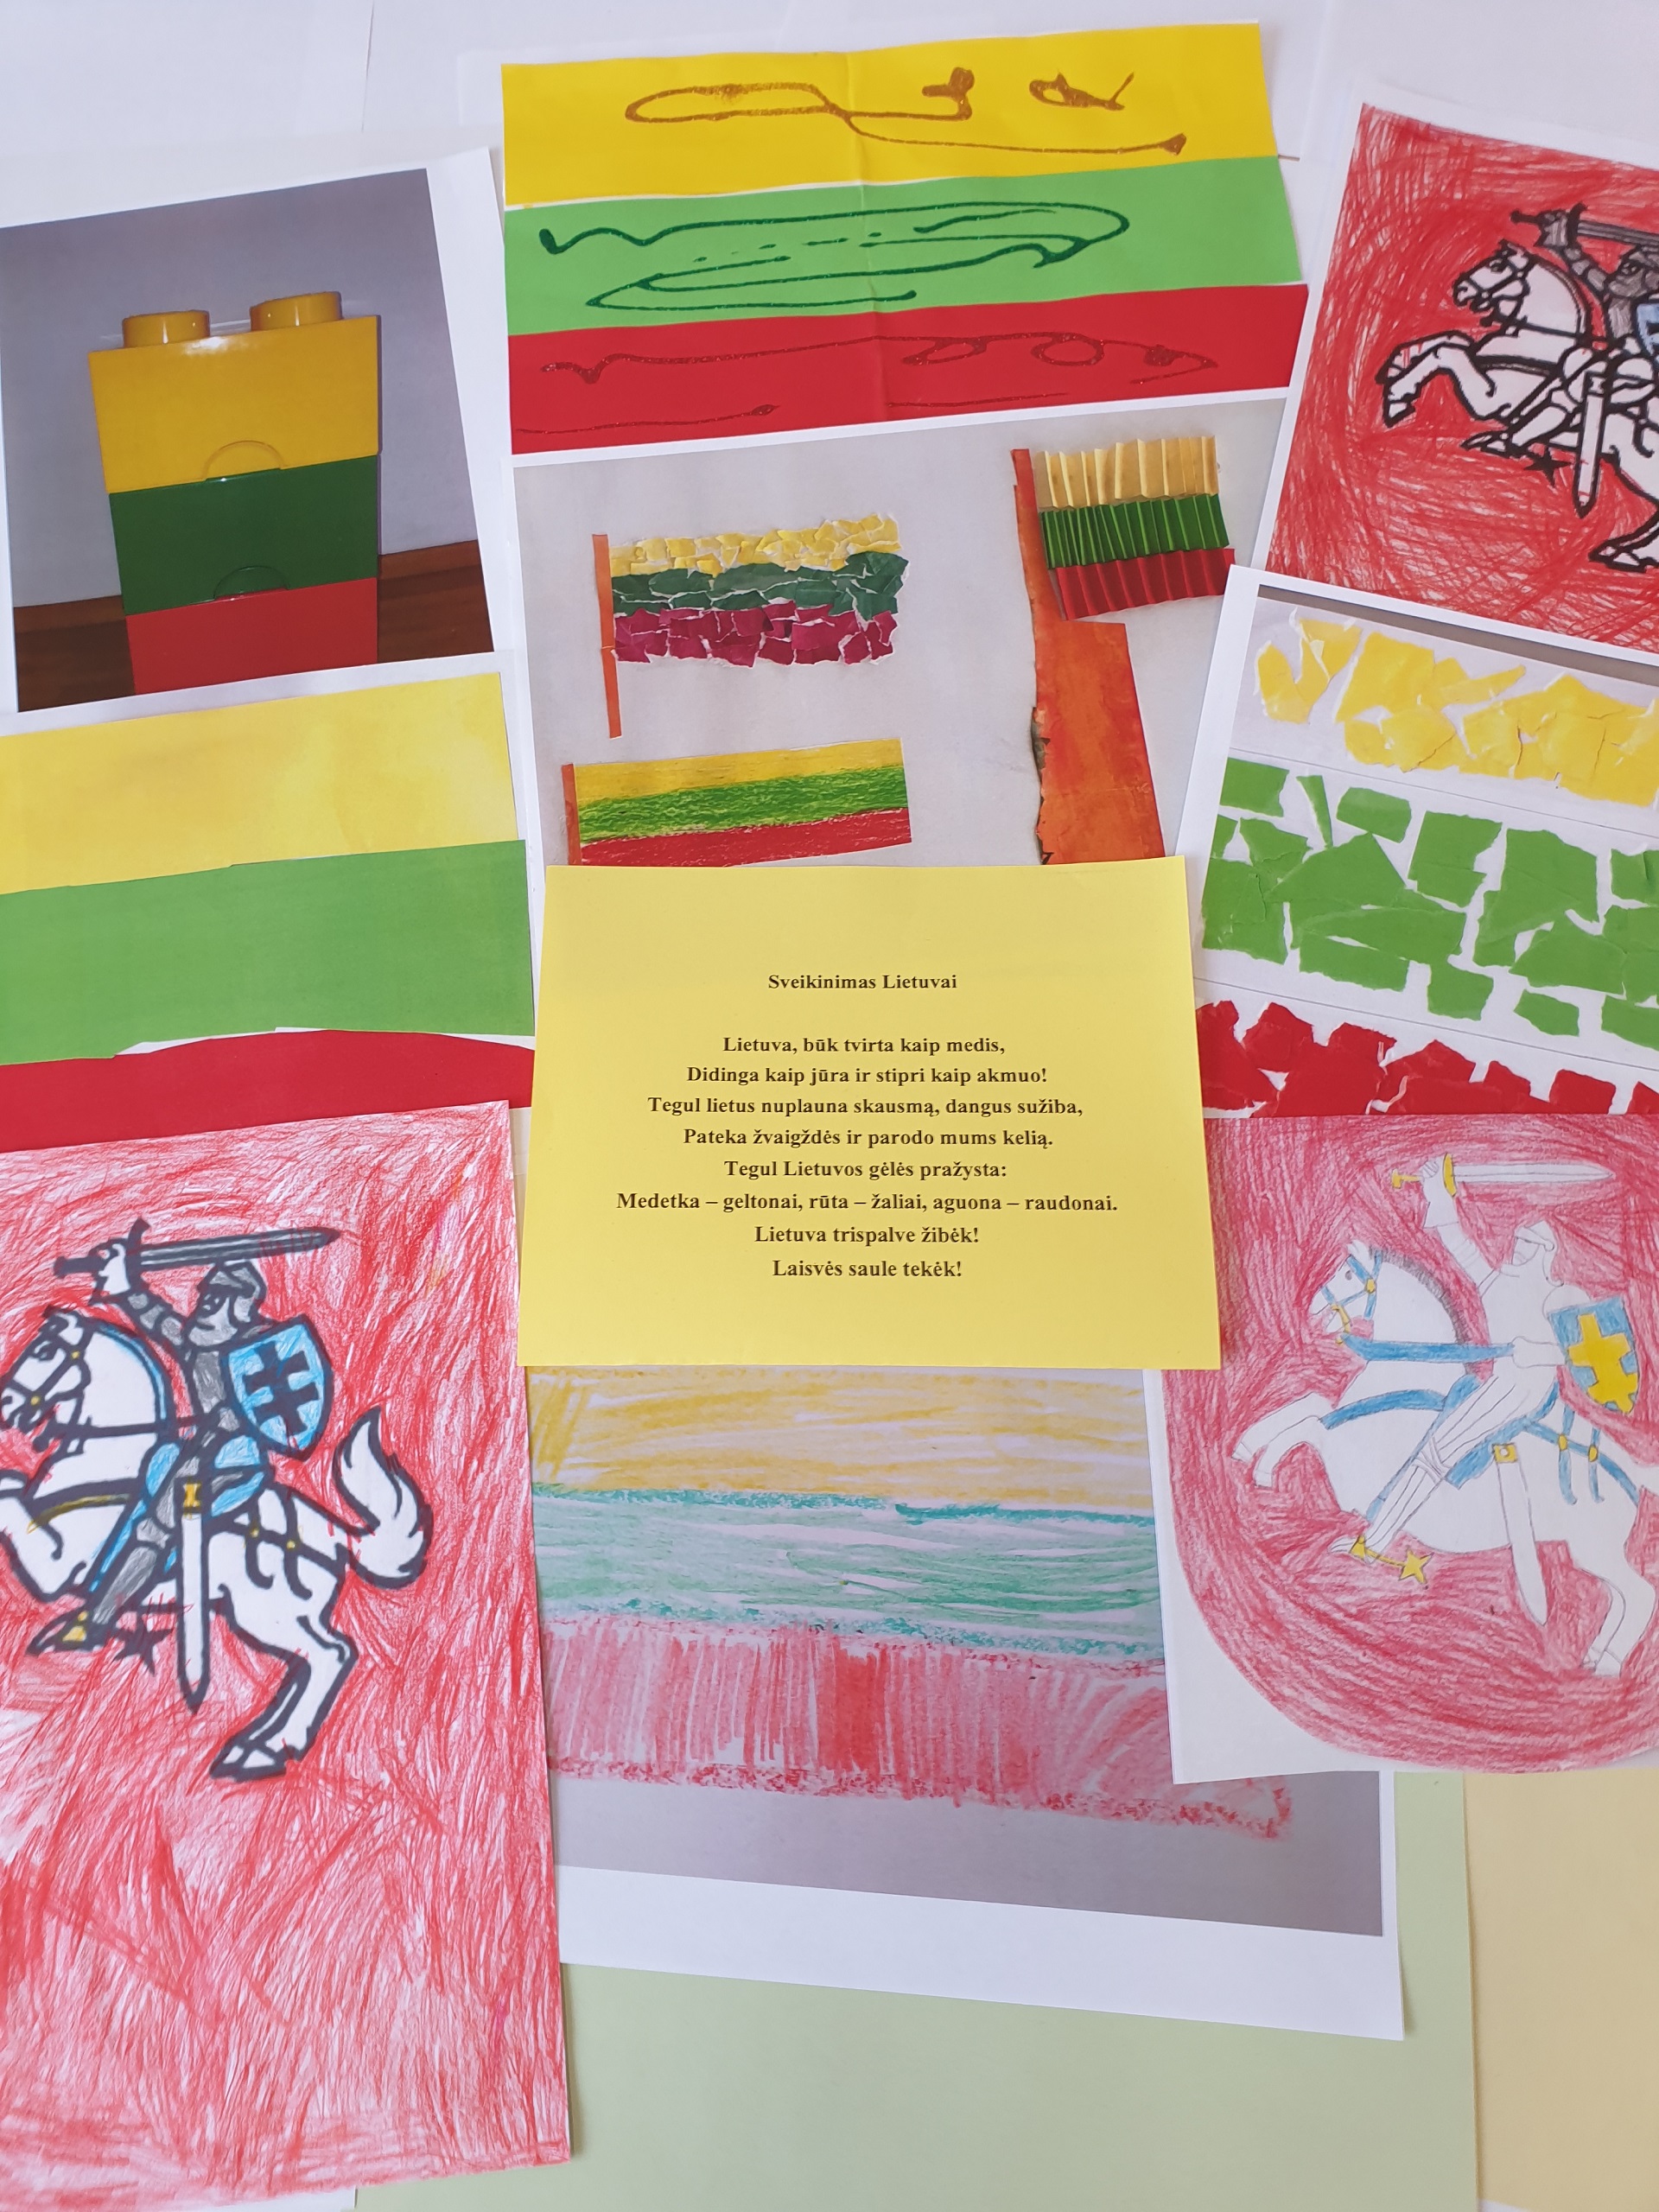 Šeštadieninės mokyklos mokiniai sukūrė sveikinimą- plakatą ir dalyvauja konkurse "Lietuva mano širdyje"!